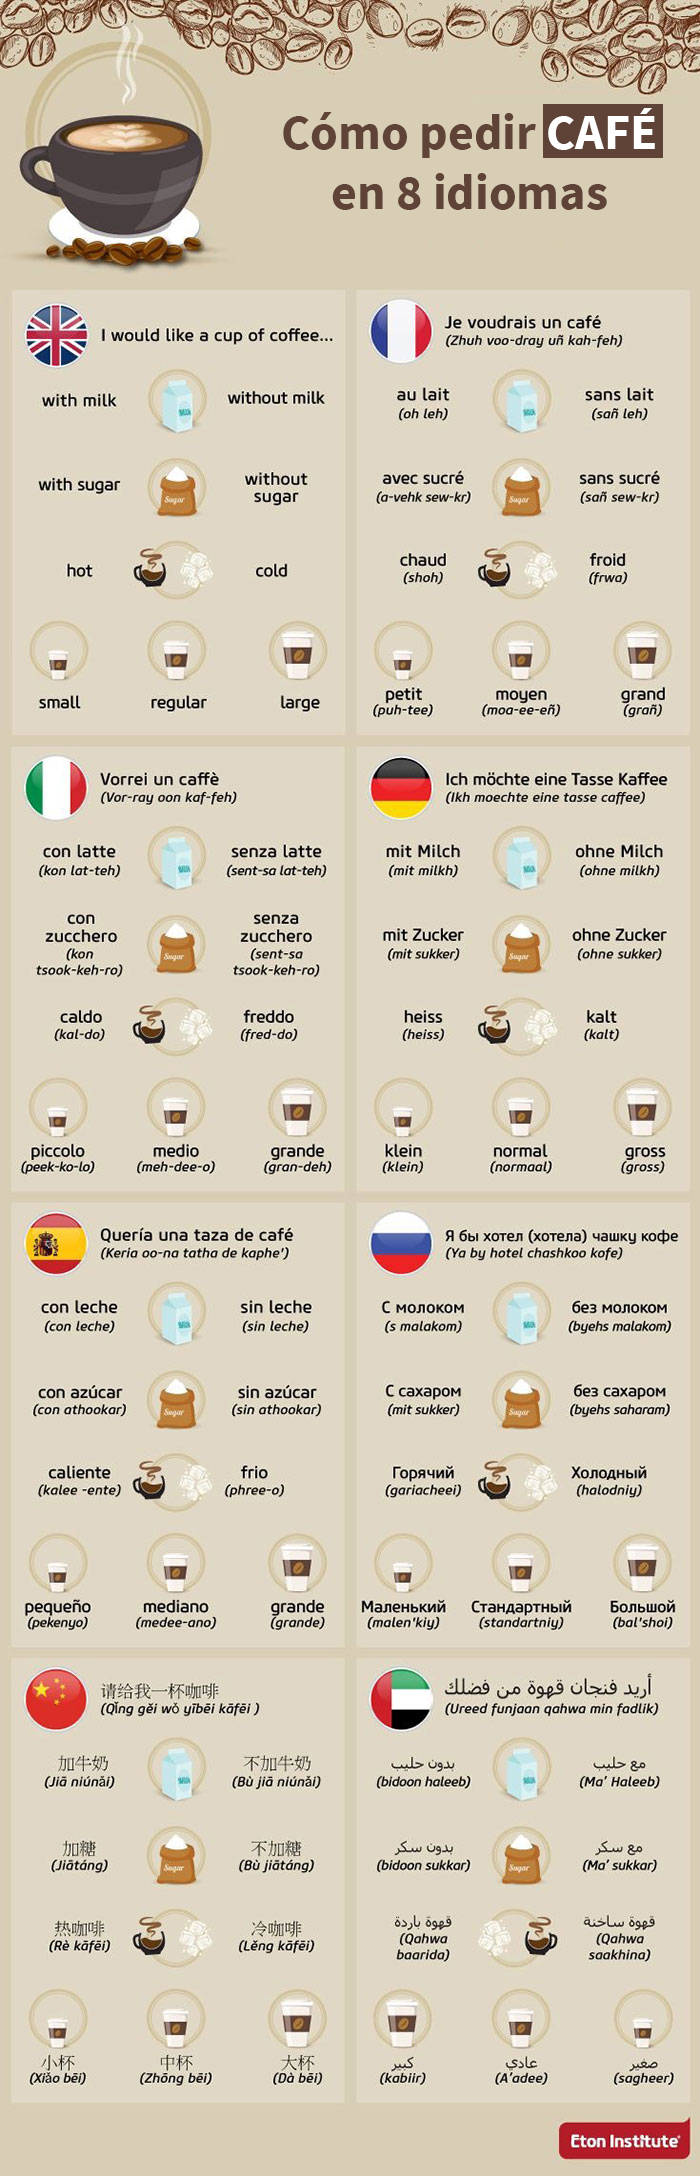 Para tu próximo viaje: cómo pedir café en 8 idiomas diferentes